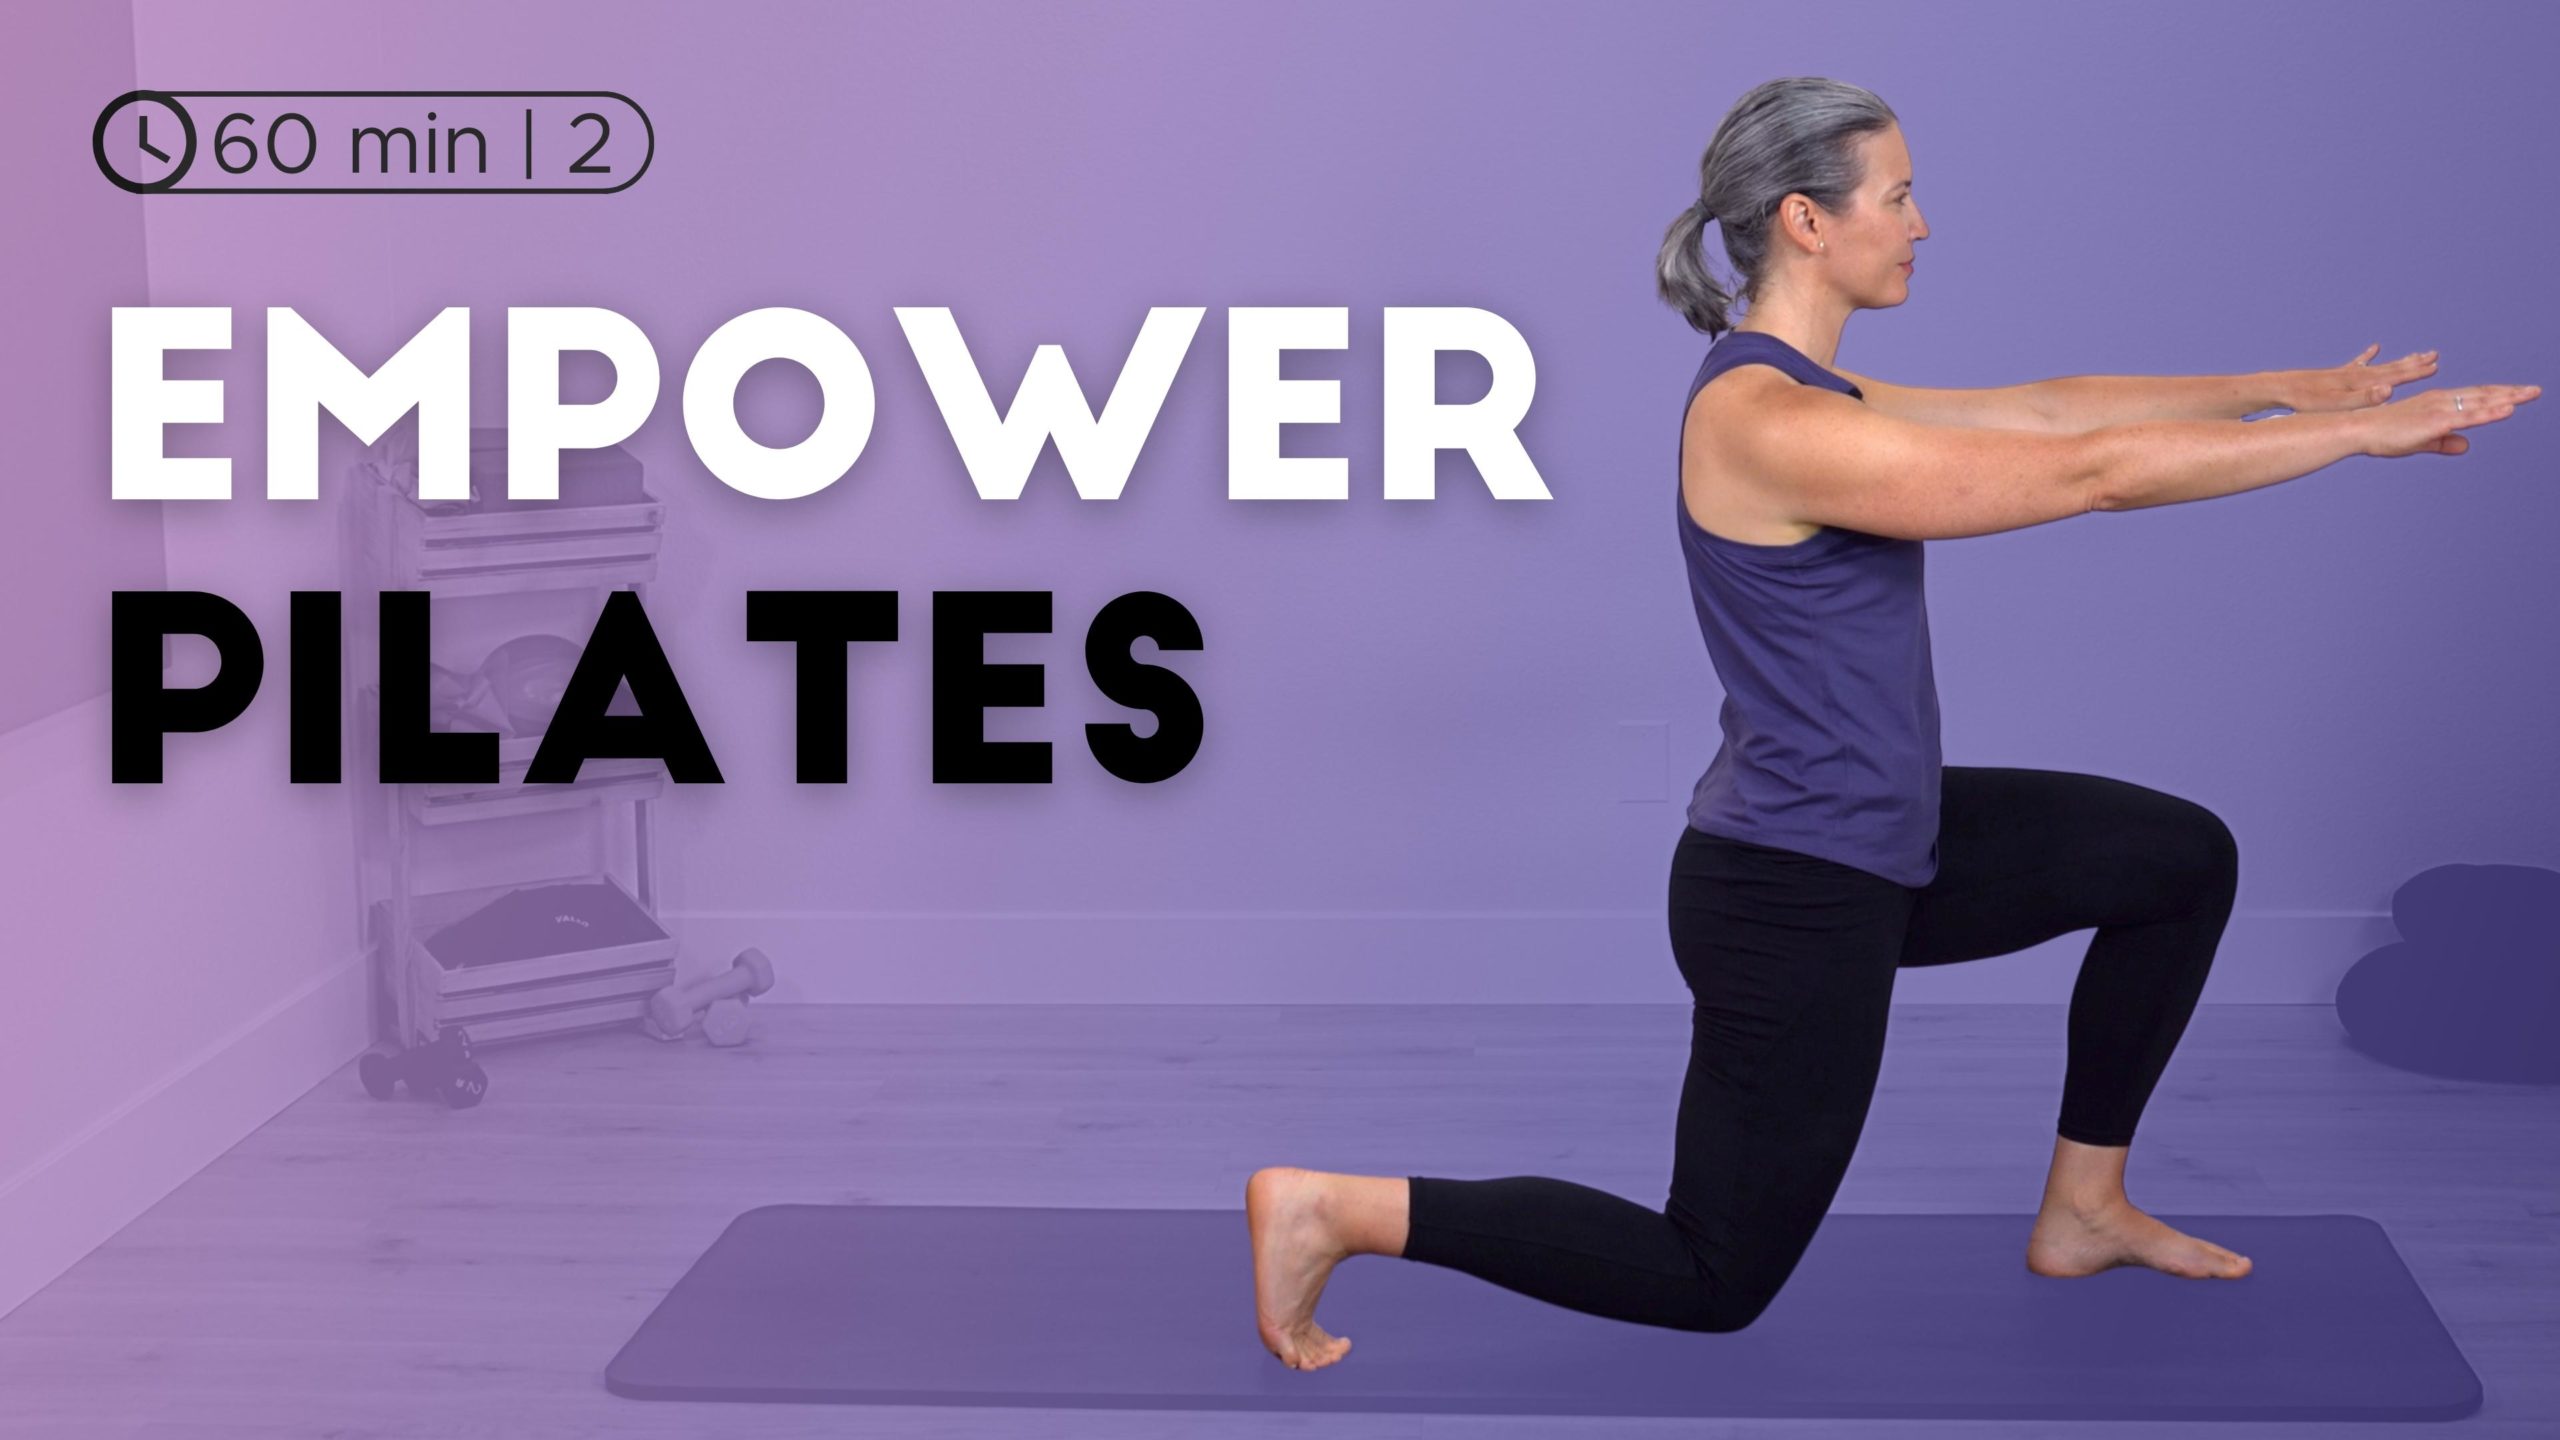 Empower Pilates